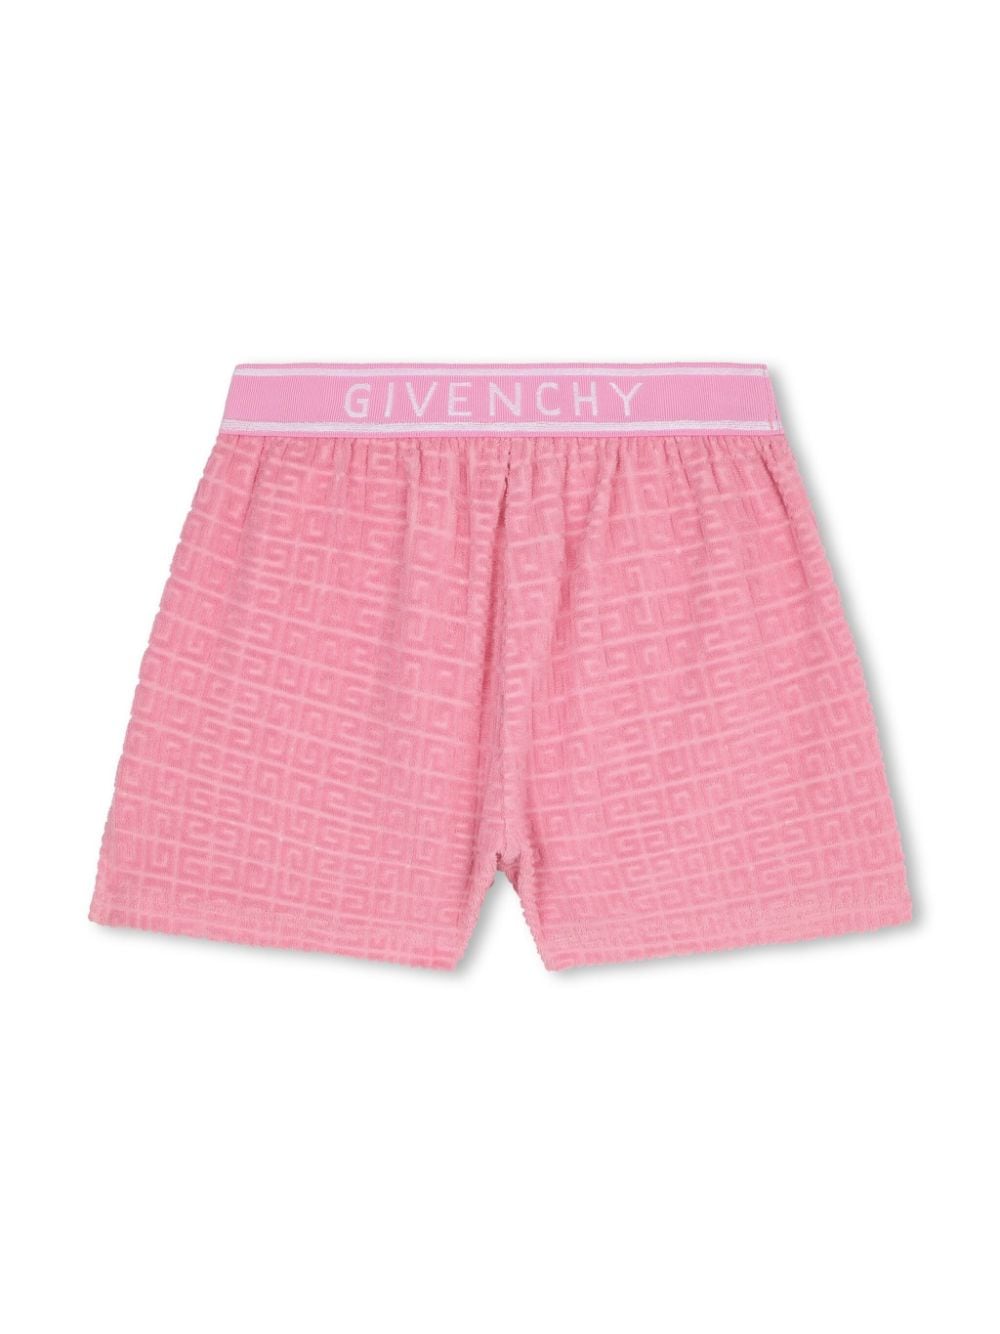 shorts rosa bambina